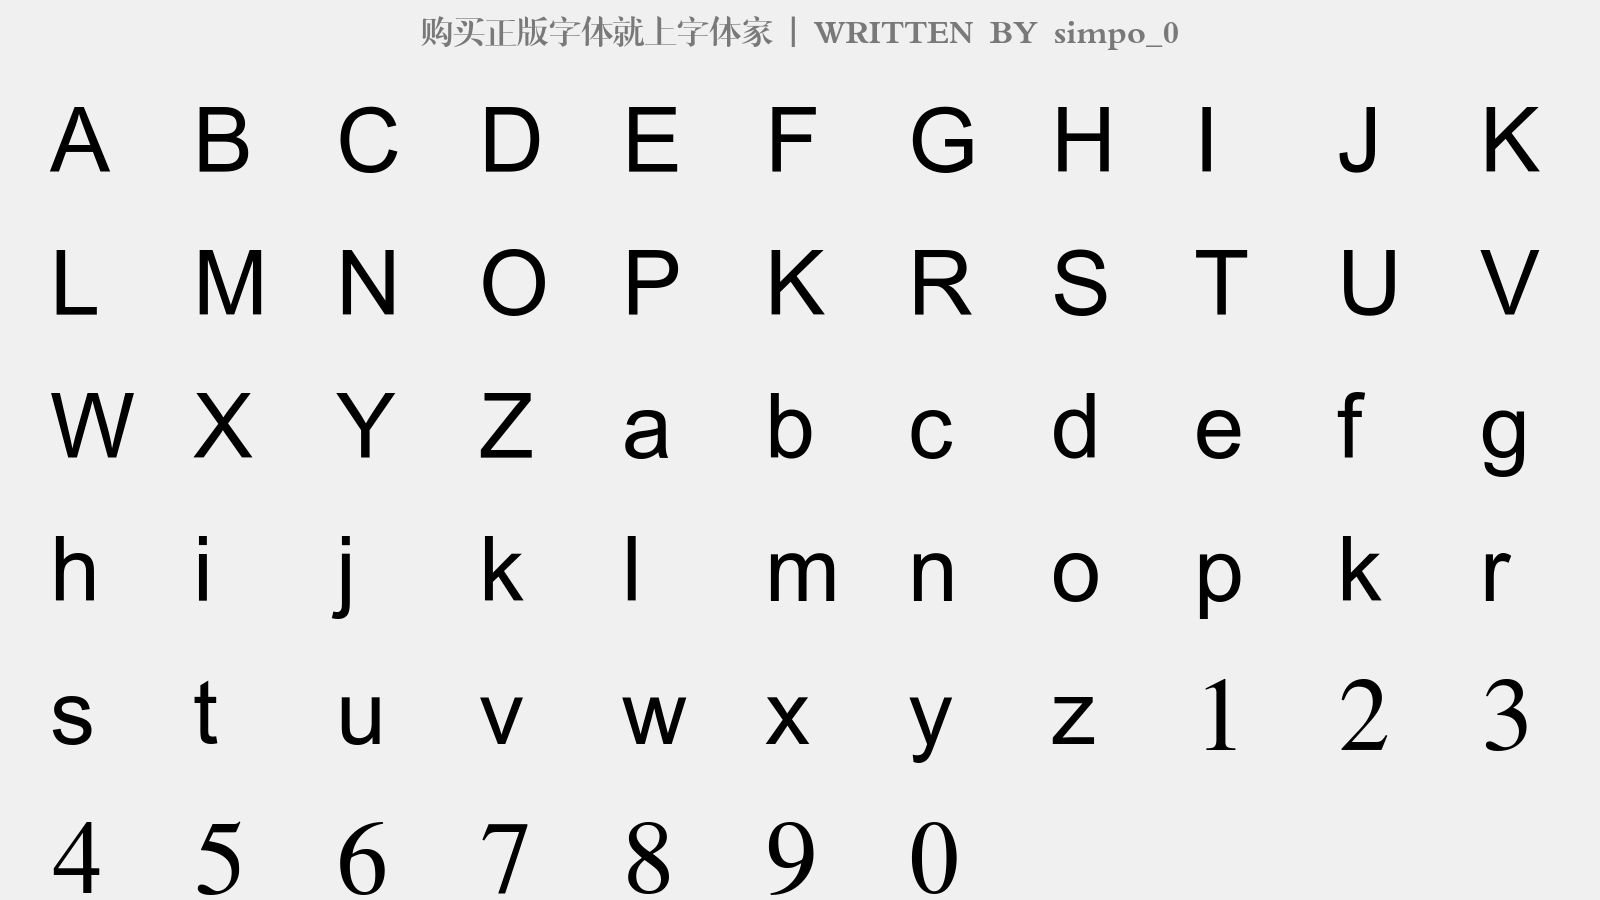 simpo_0 - 大写字母/小写字母/数字